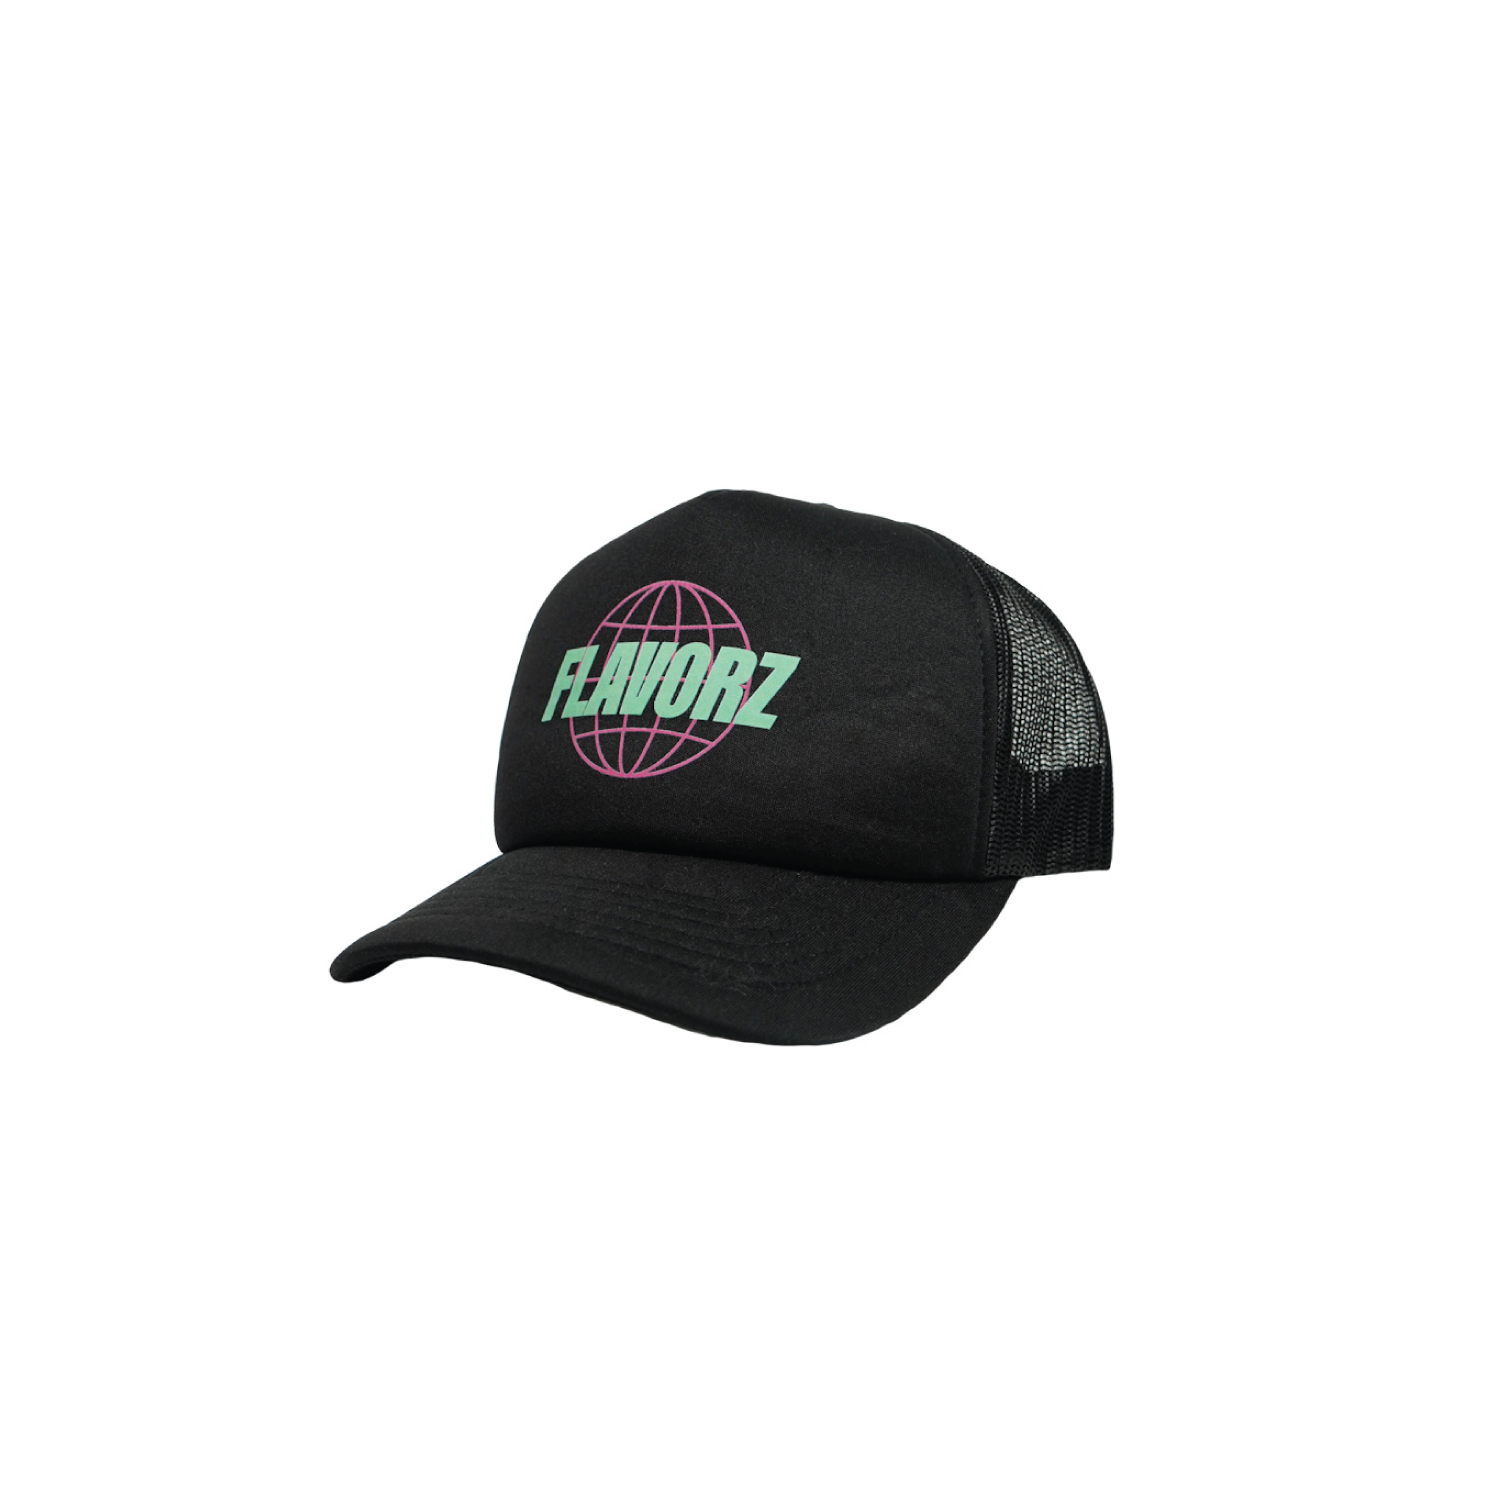 FlavorZ World Tour Trucker Hat